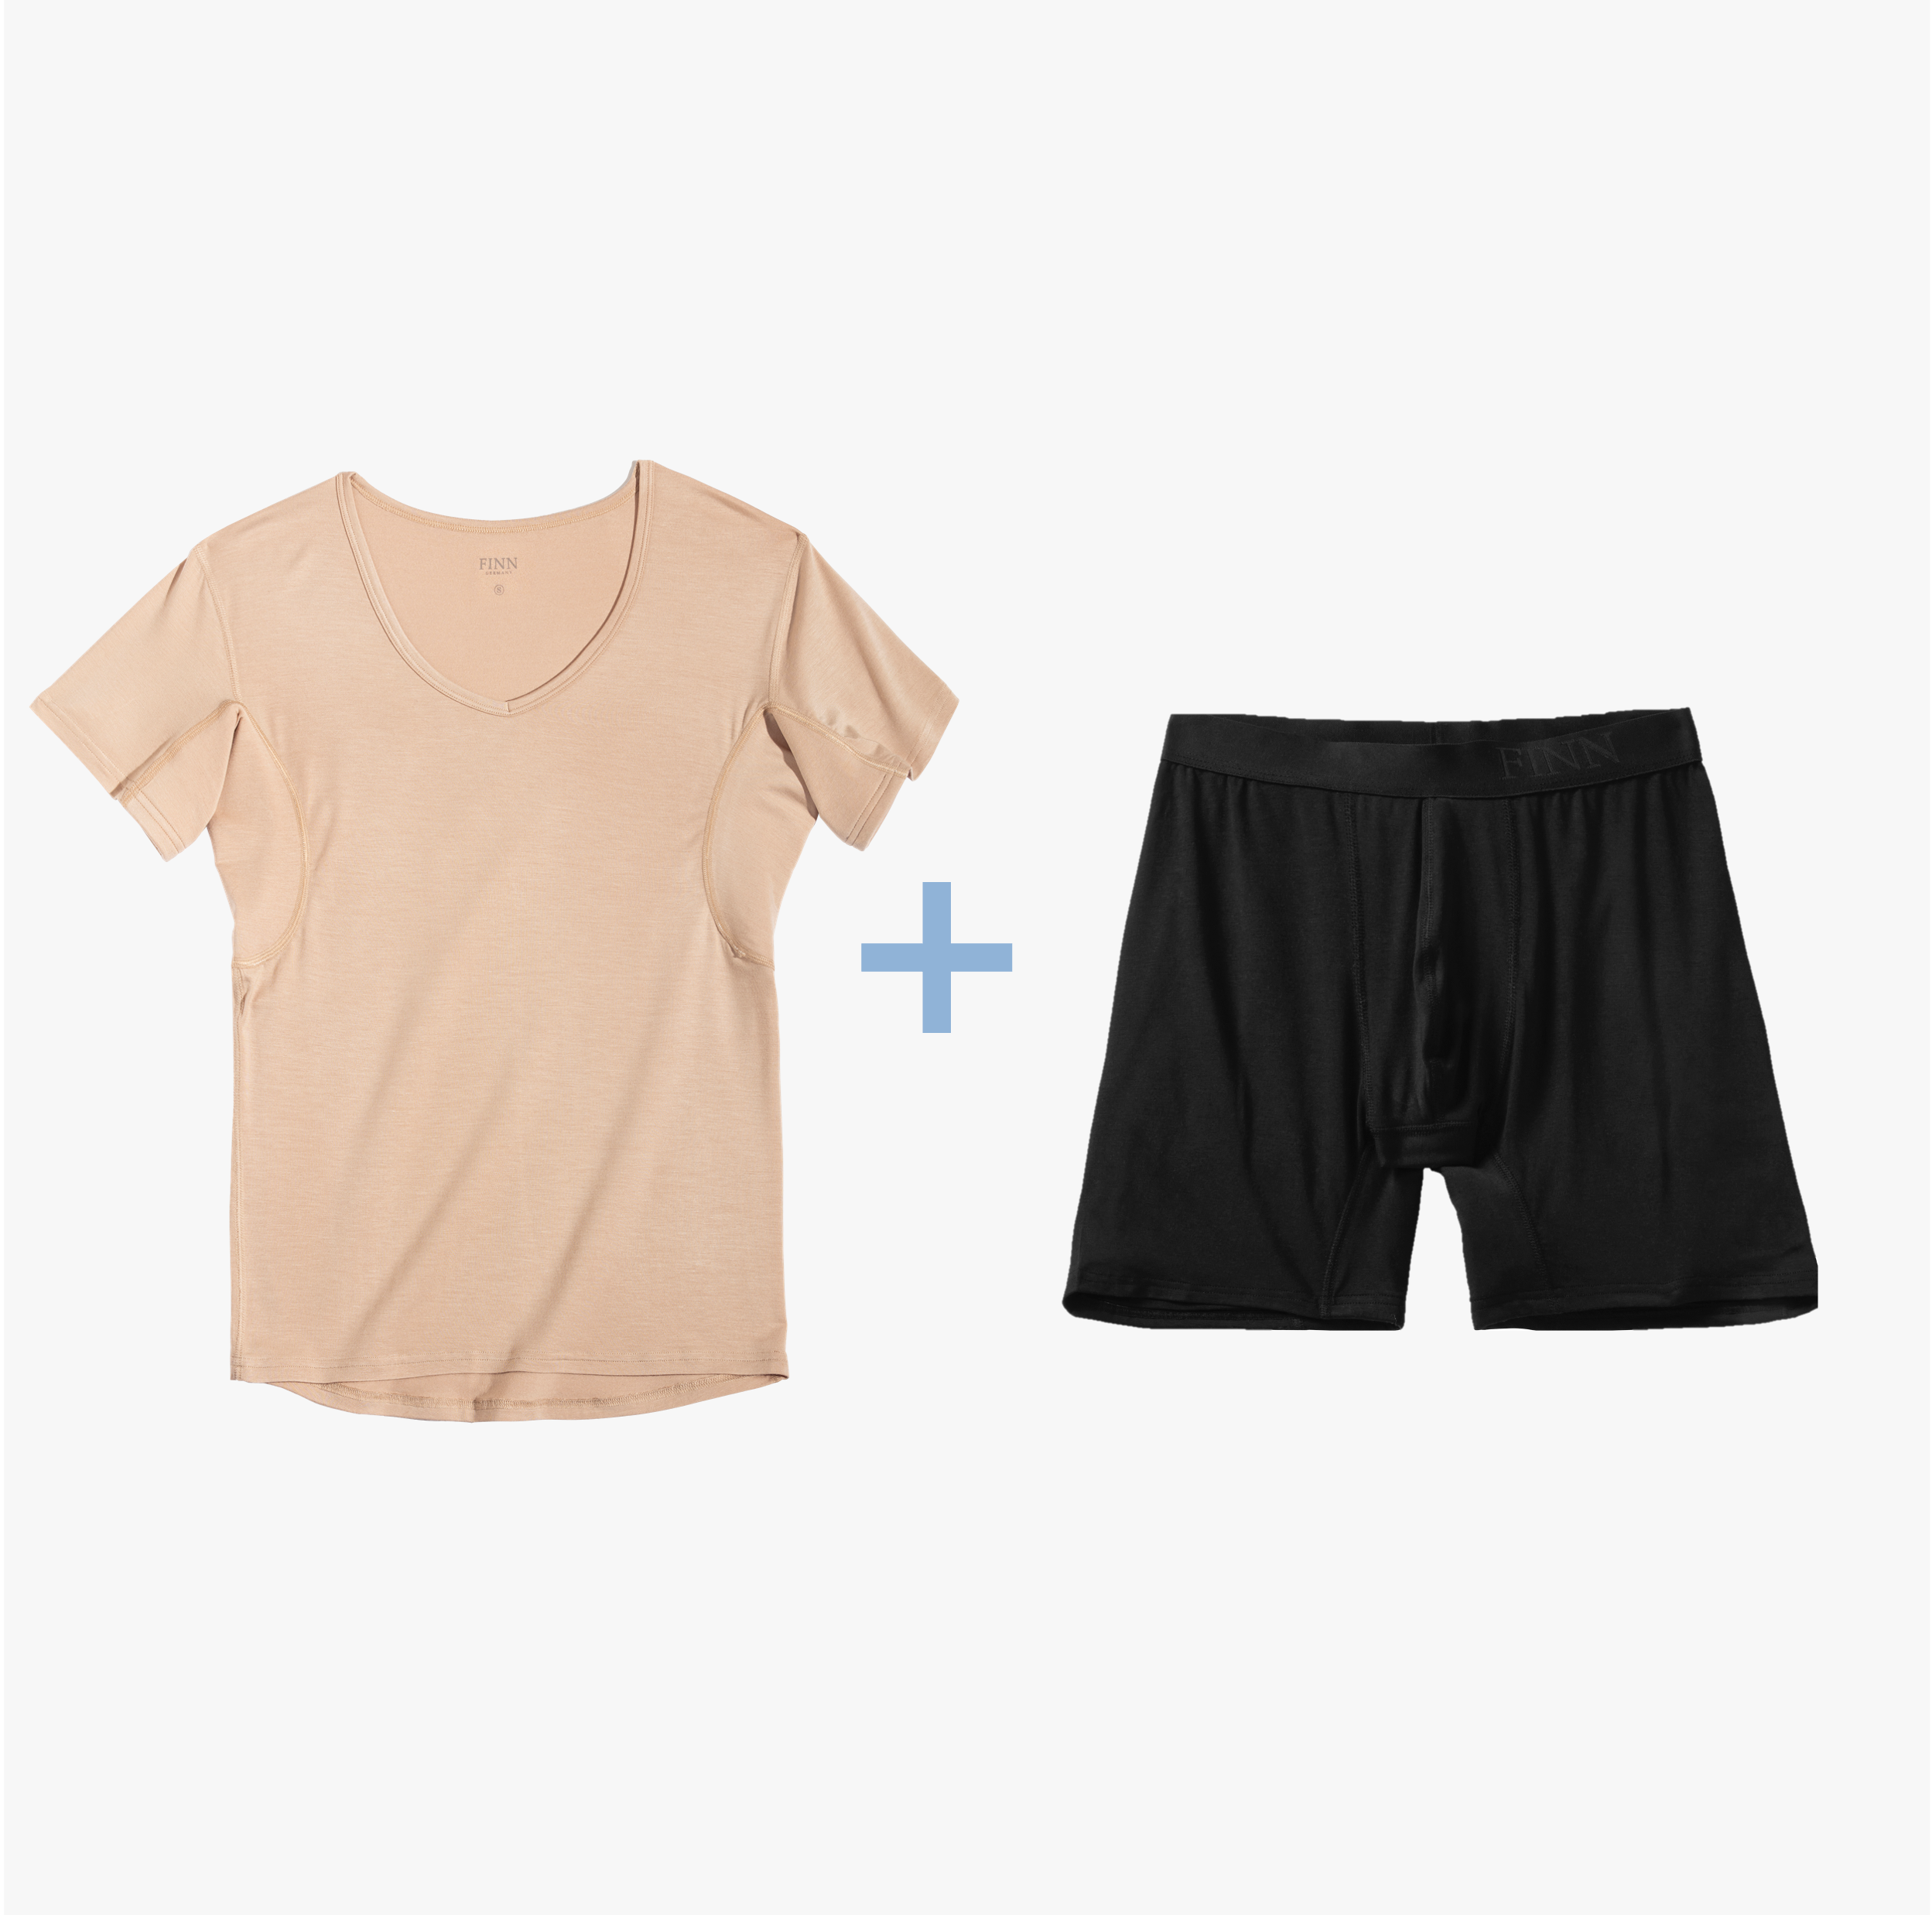 Nude Anti-Schweiß Shirt und schwarze Boxershorts im Anti-Schweiß Unterwäsche Set. 100% Schutz vor Schweißflecken, 3-Lagen Technologie, zertifizierter Tragekomfort.